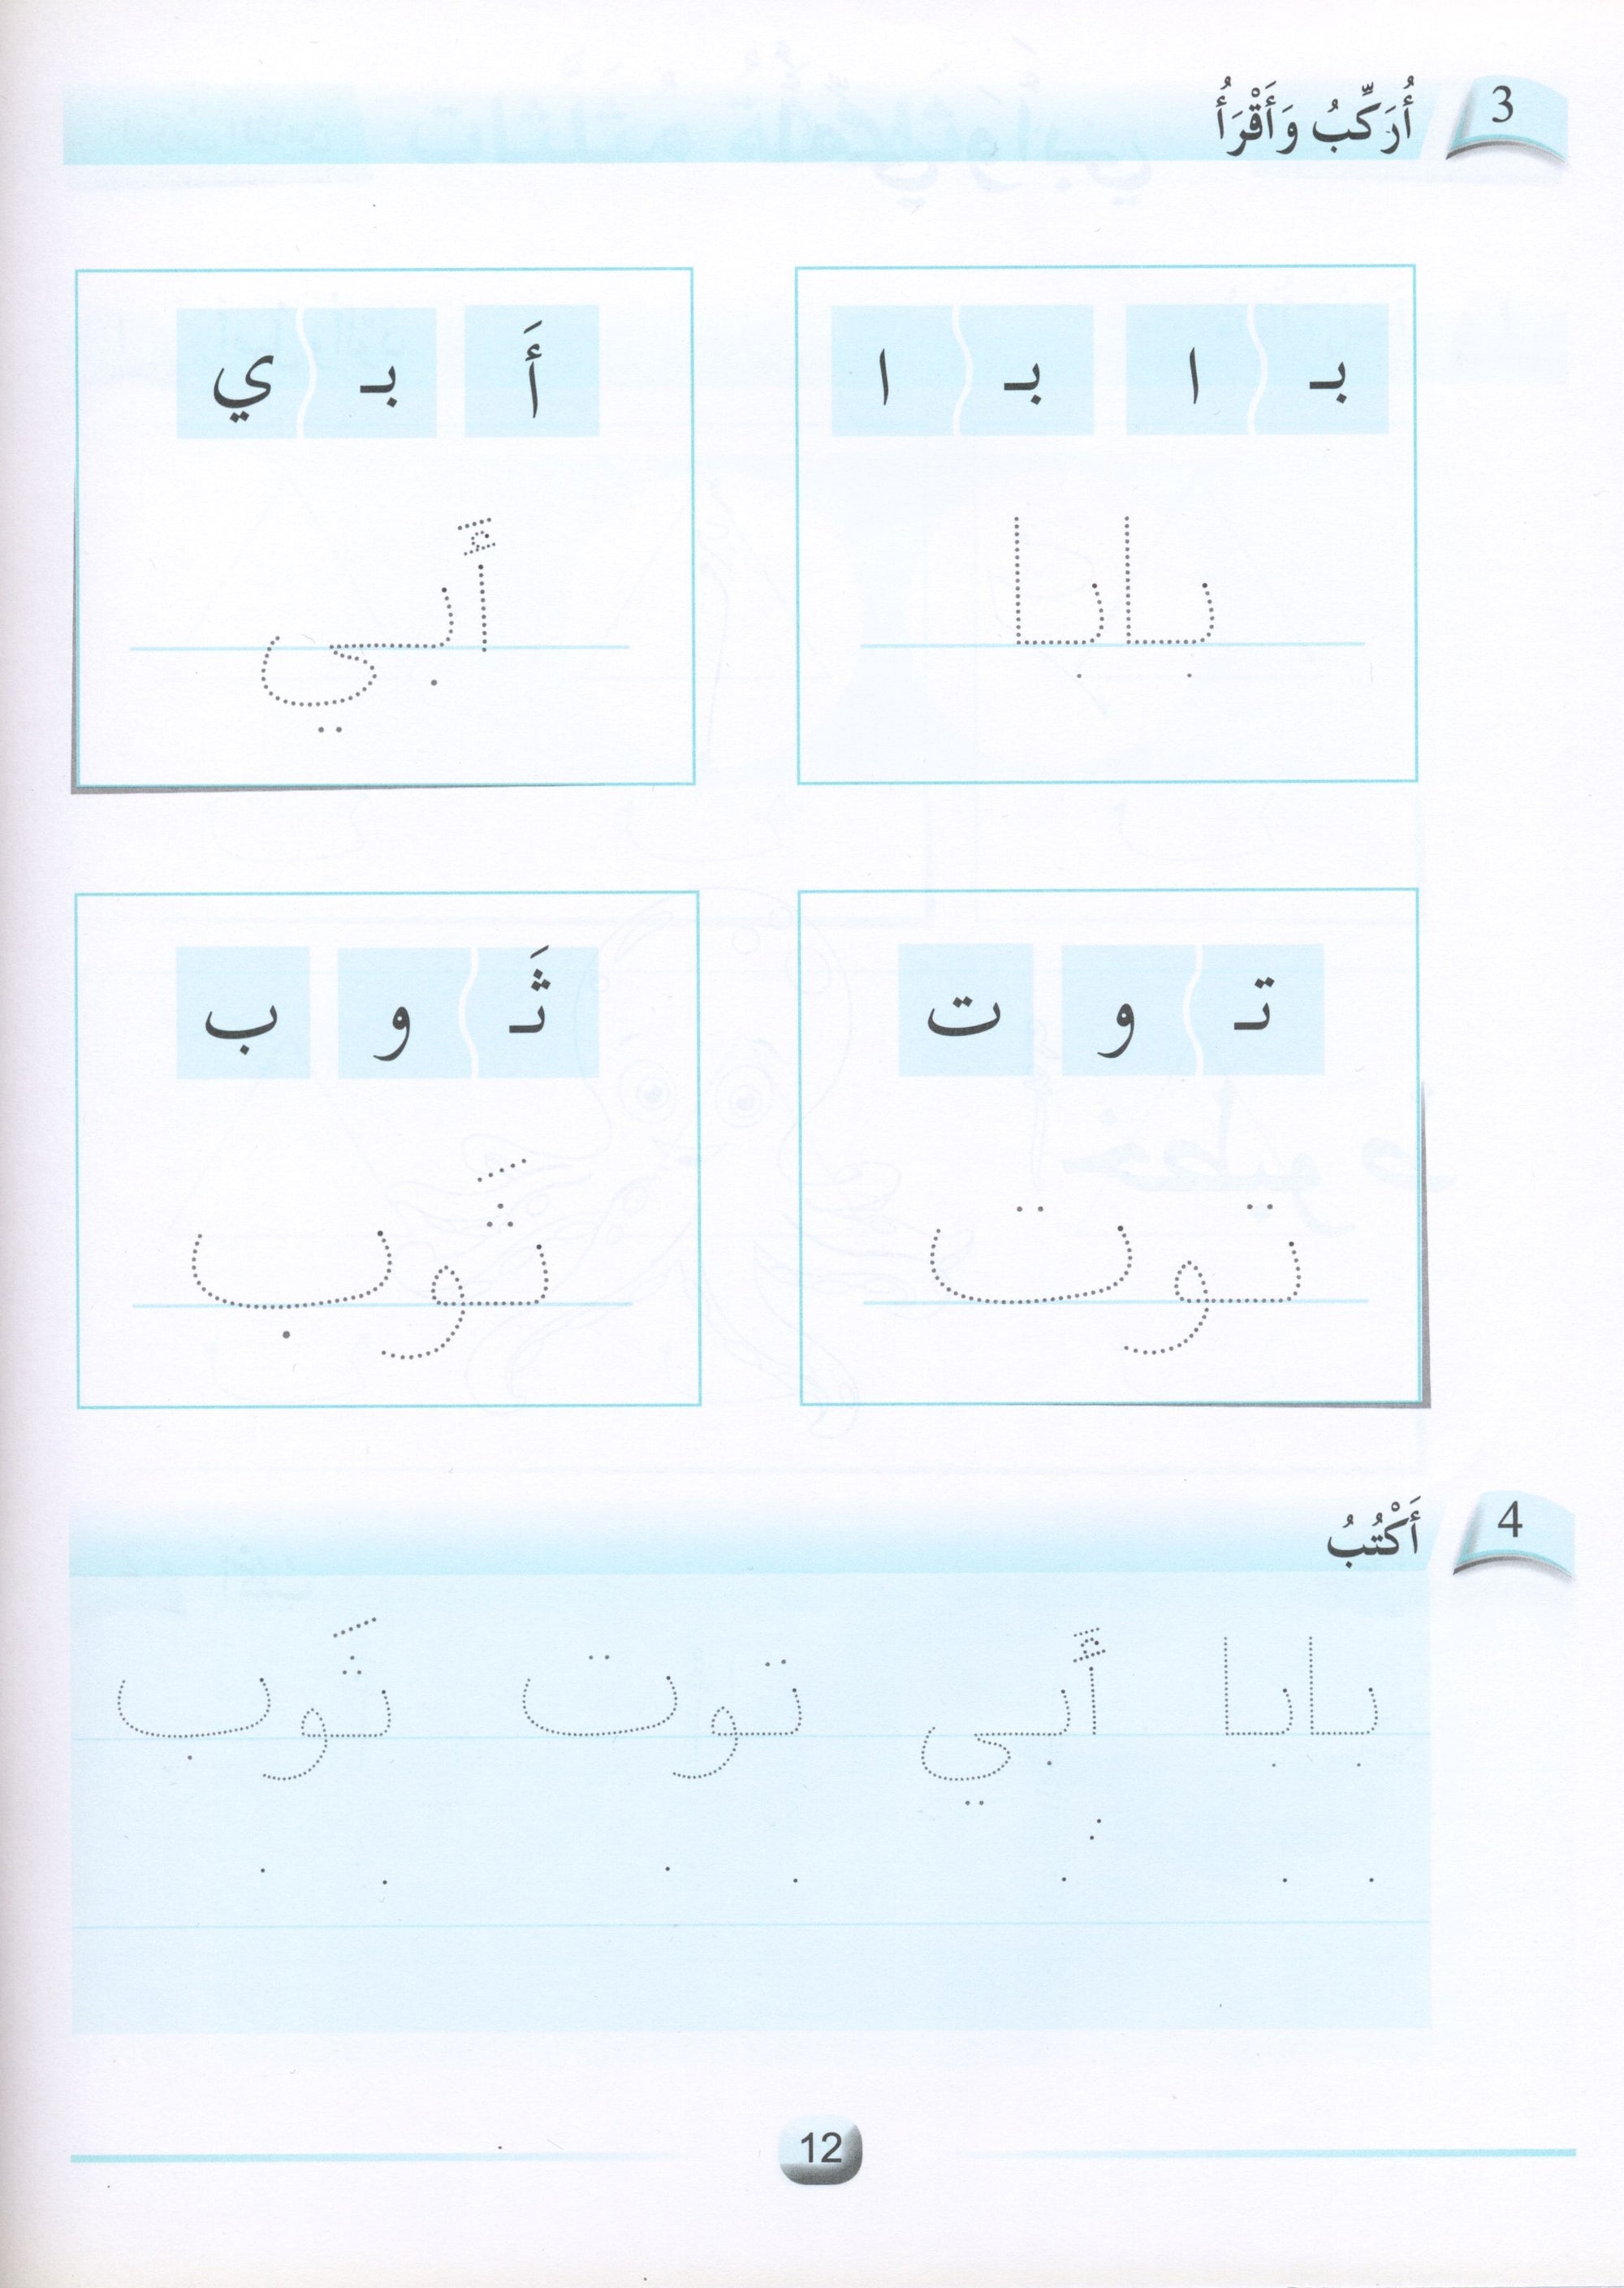 Arabic Friends Workbook Level KG أصدقاء العربية  كتاب النشاط